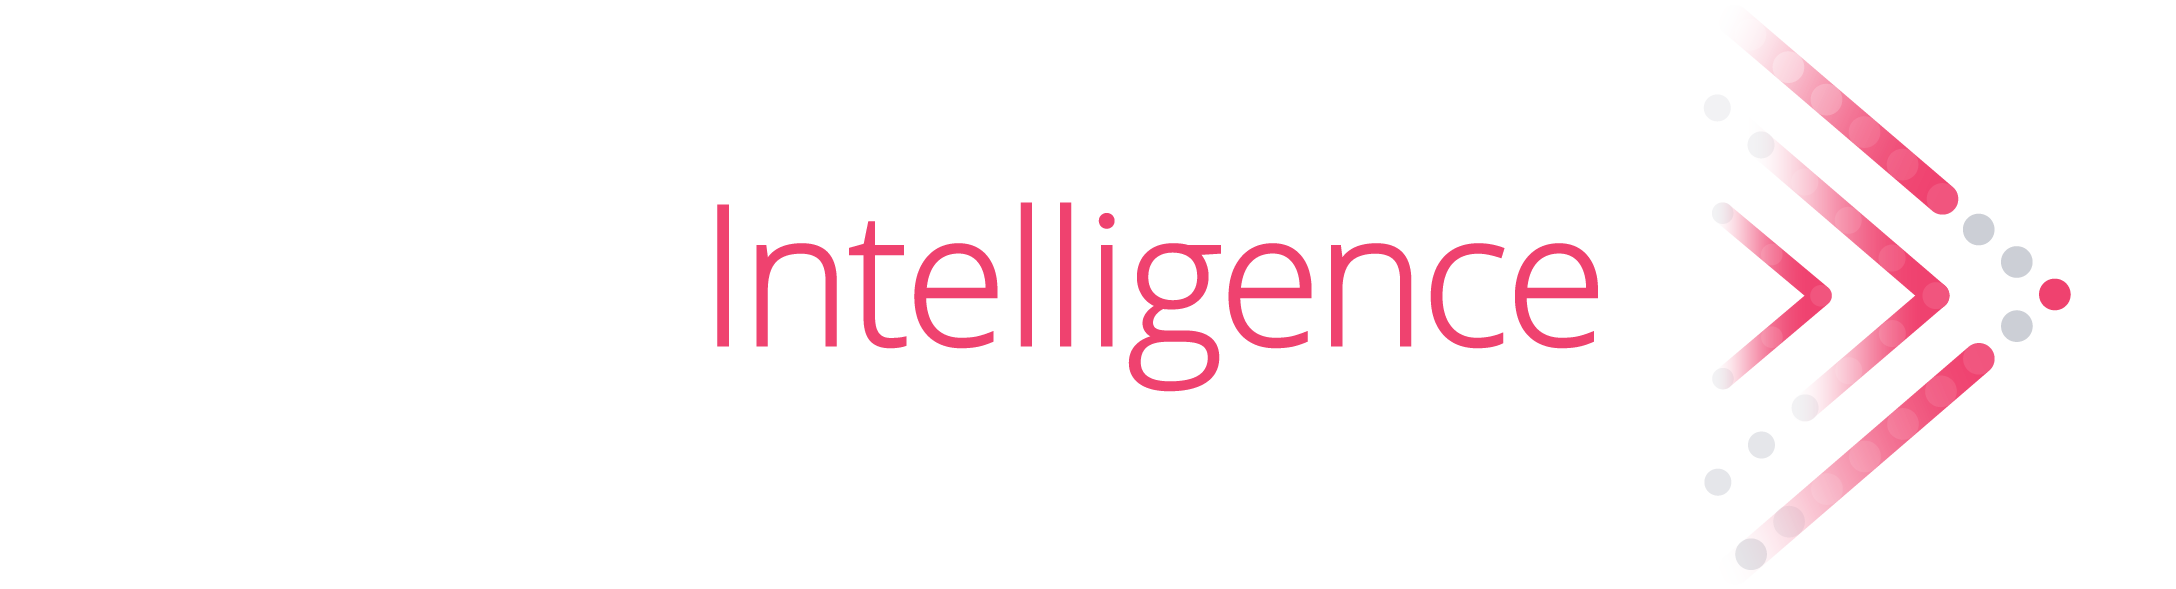 Pharma Intelligence Logo